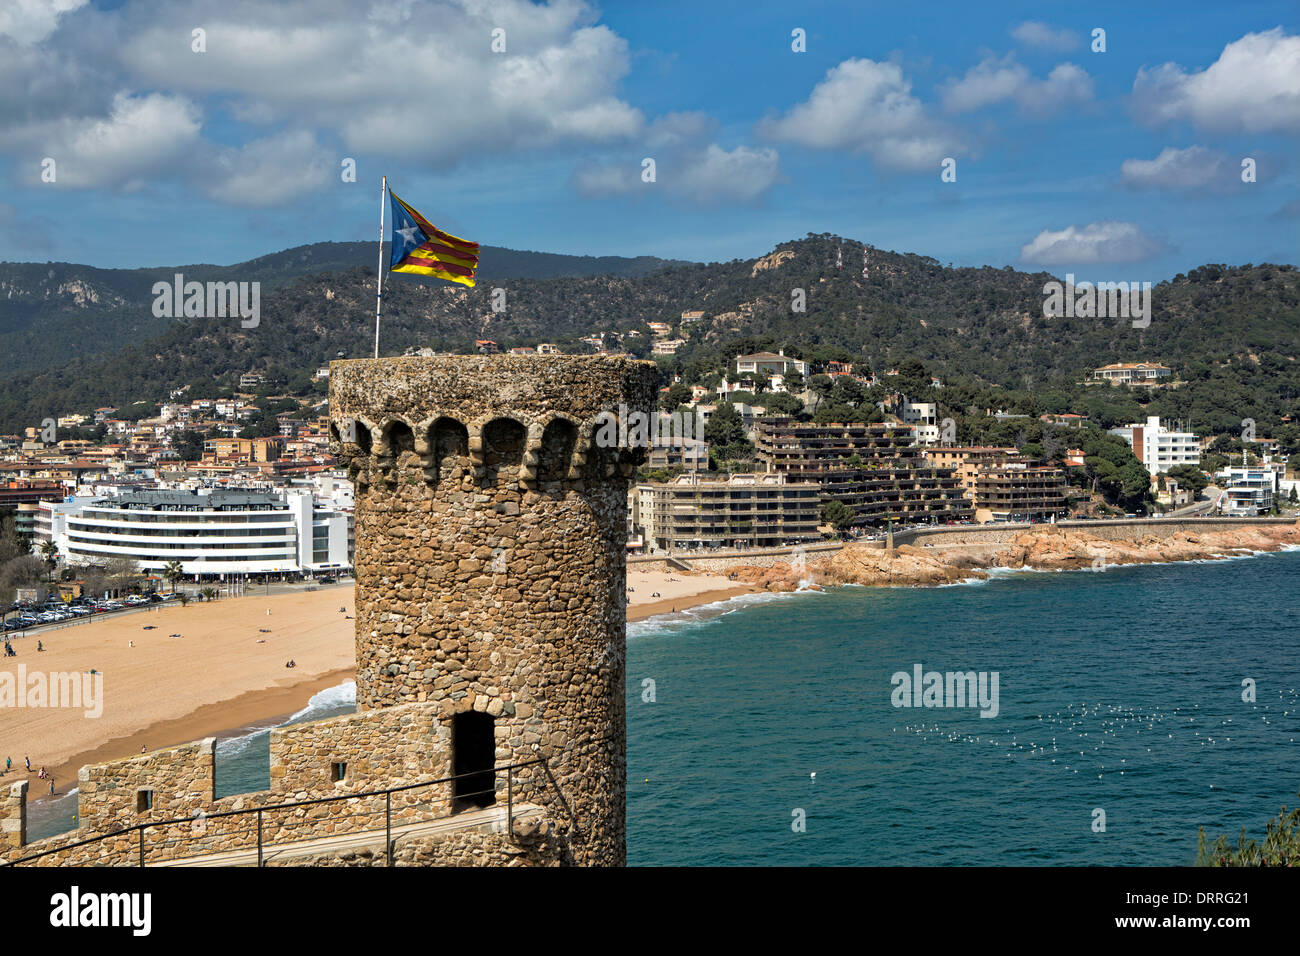 La localidad de Tossa de Mar en la Costa Brava, en el noreste de España Foto de stock